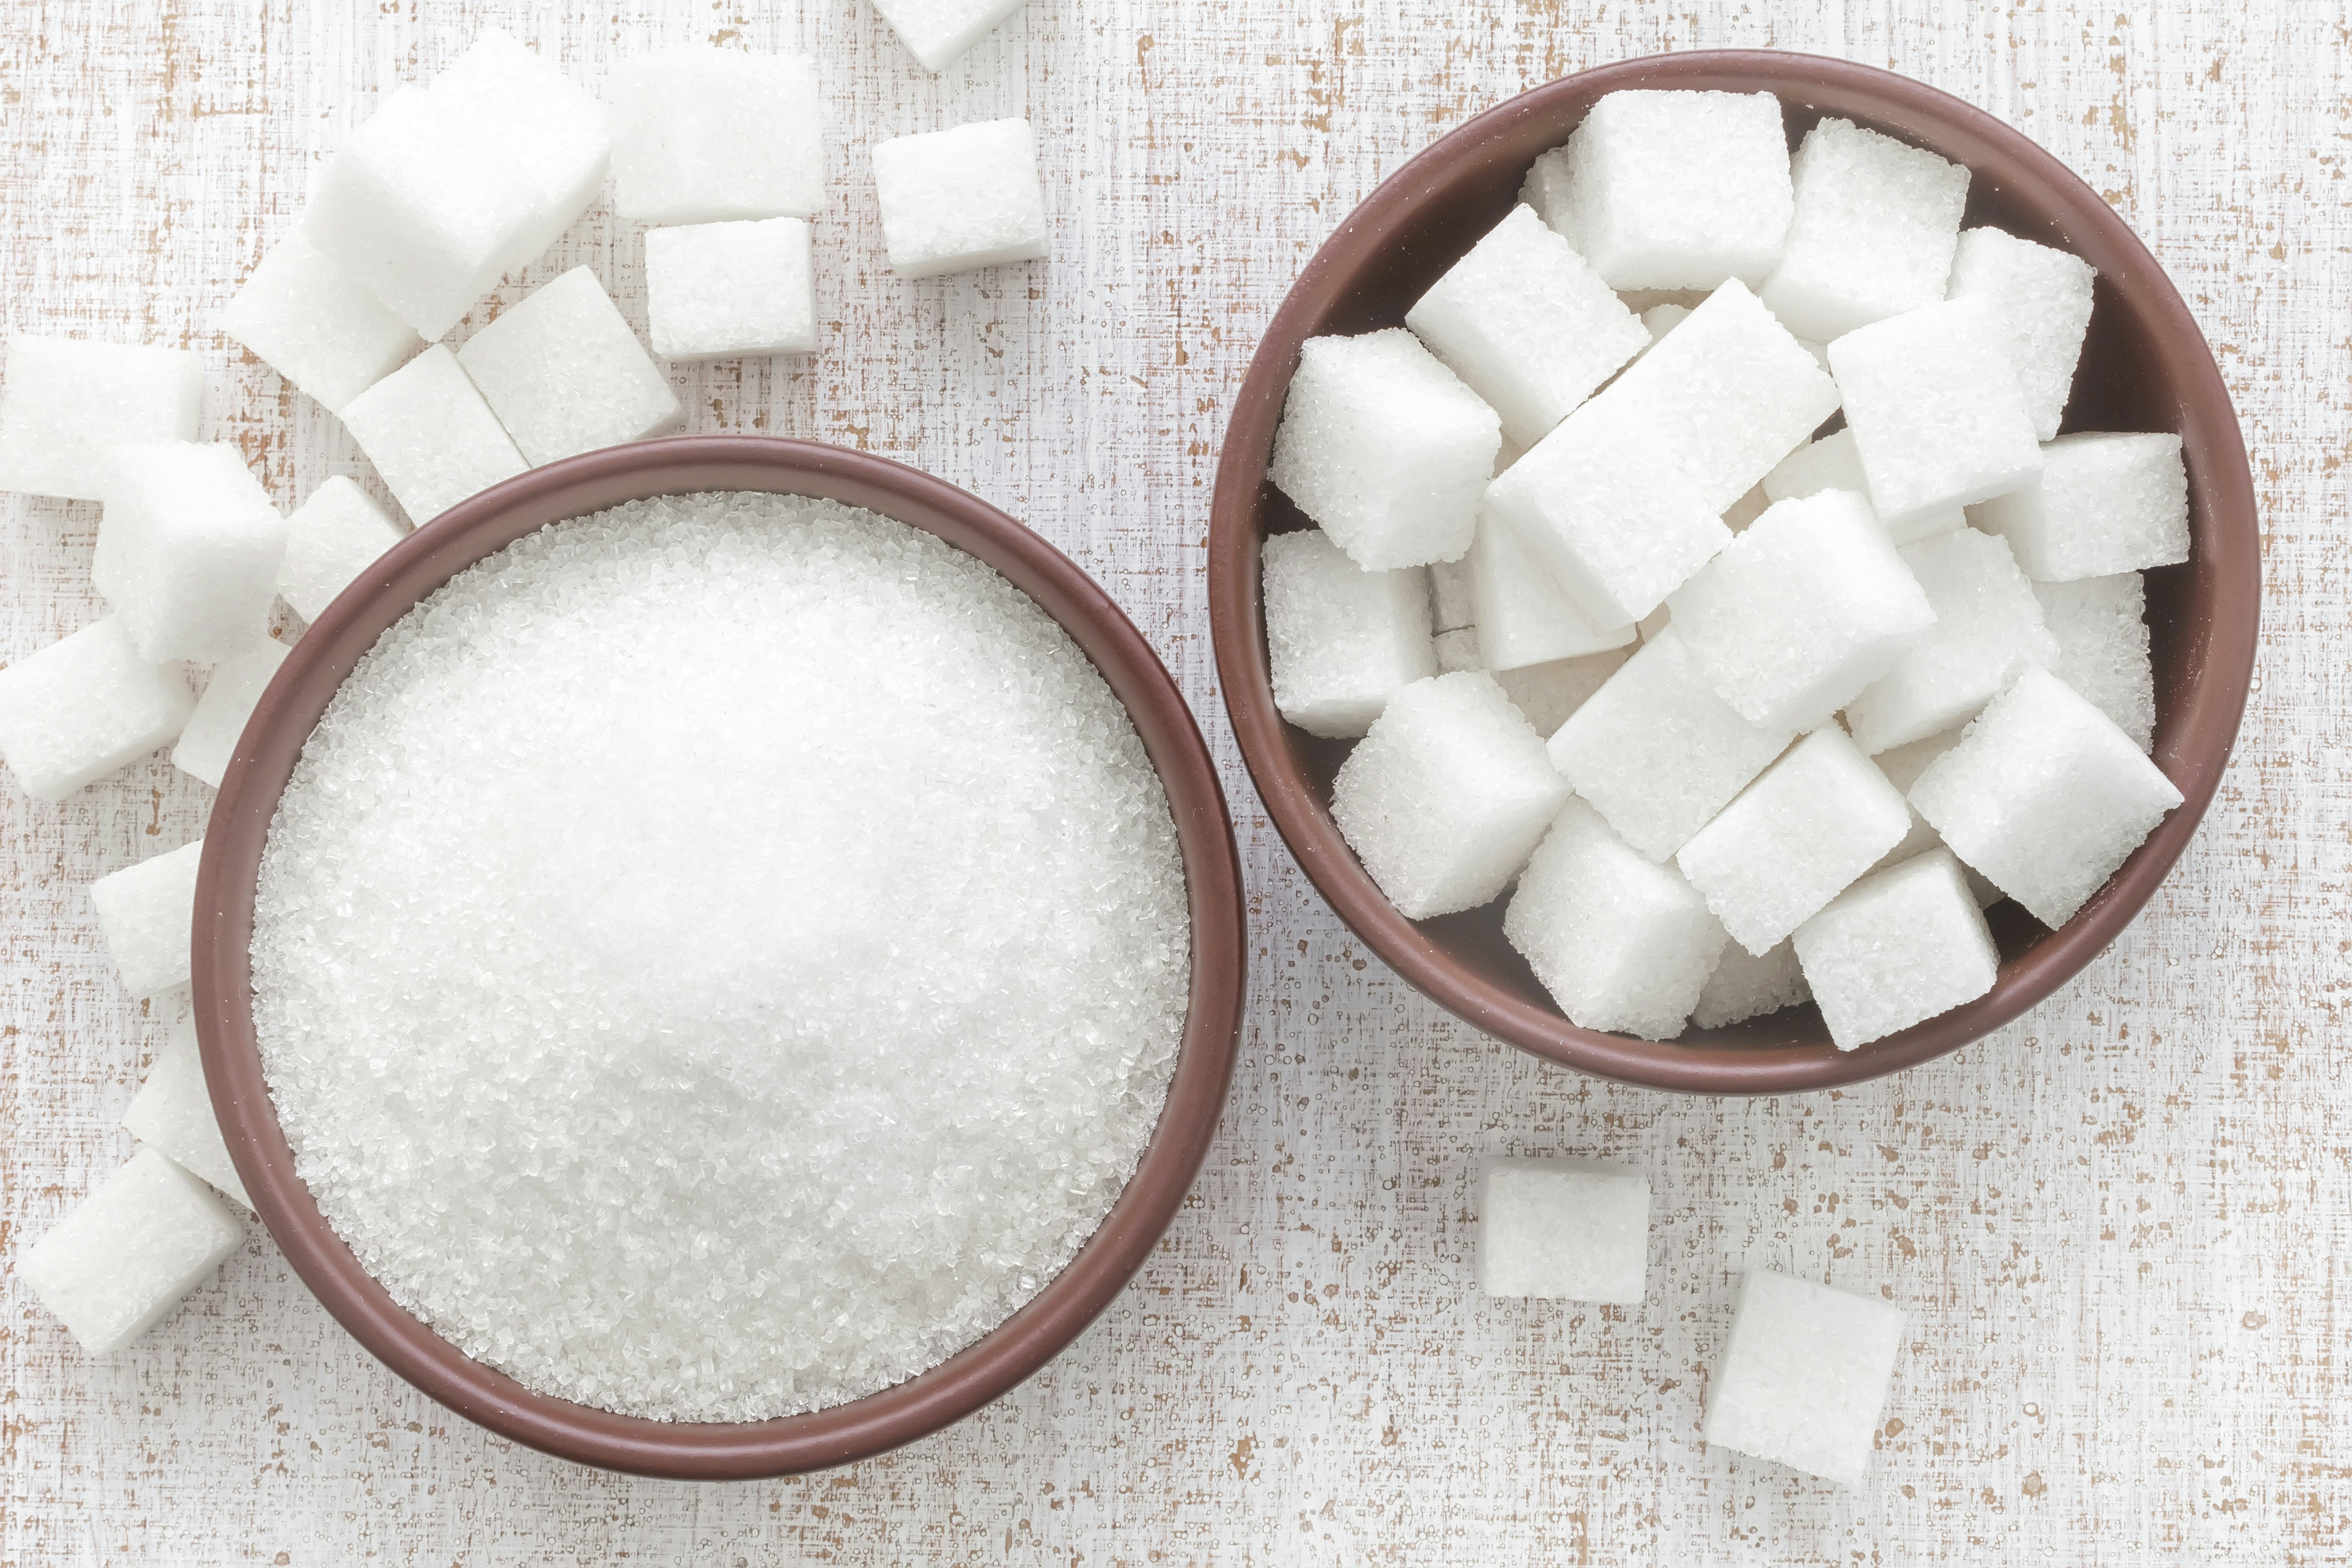 'Overdaad aan suiker moet aangepakt worden'